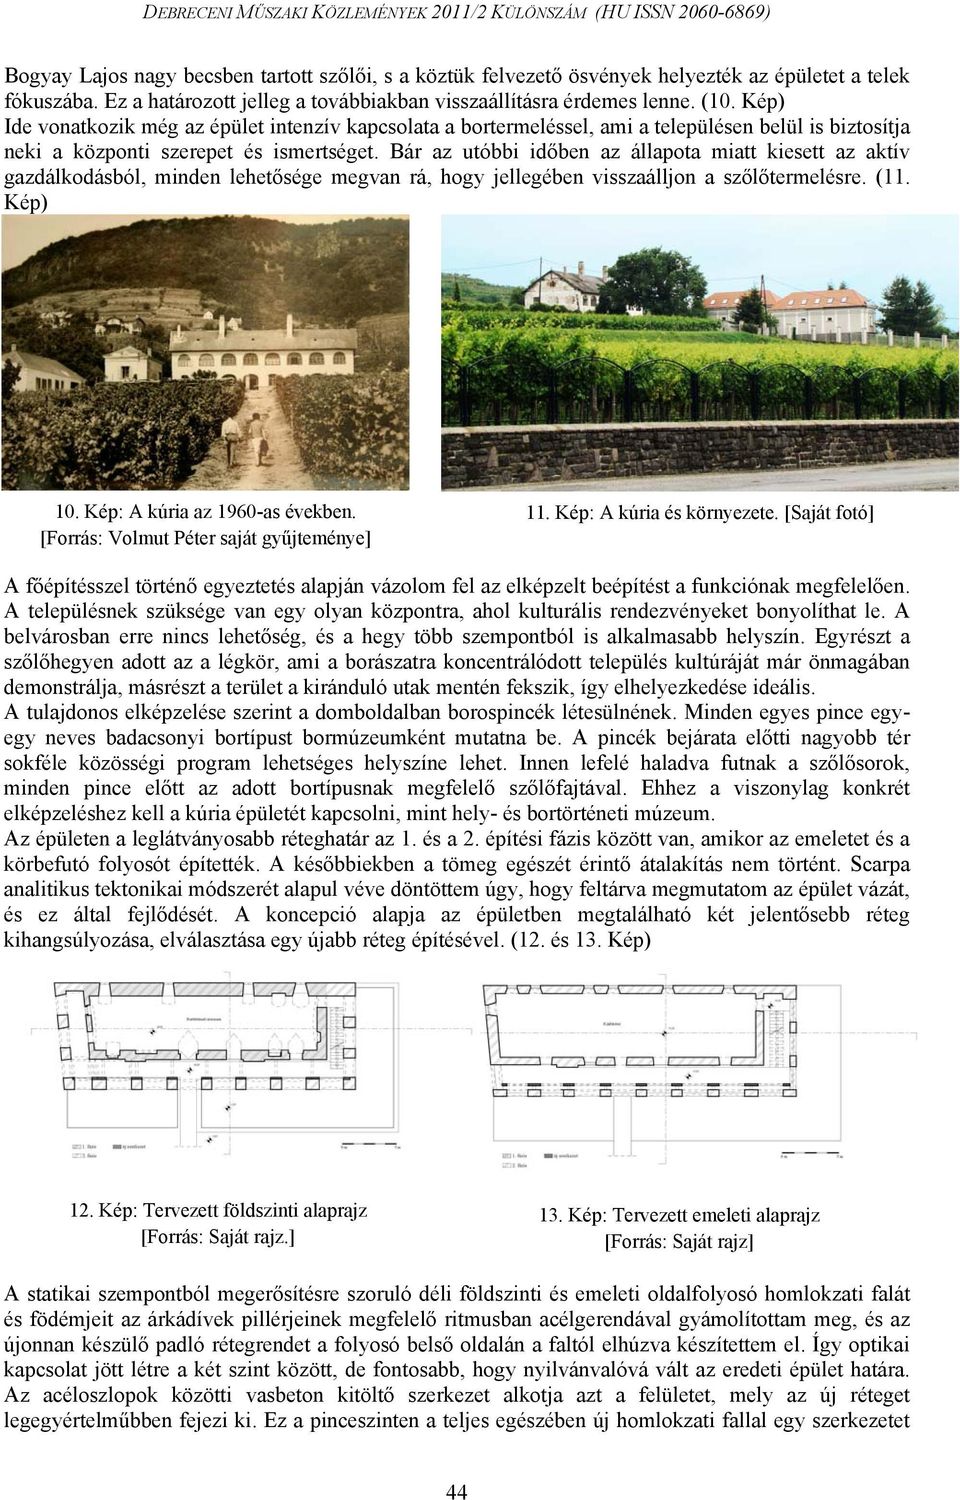 Bár az utóbbi időben az állapota miatt kiesett az aktív gazdálkodásból, minden lehetősége megvan rá, hogy jellegében visszaálljon a szőlőtermelésre. (11. Kép) 10. Kép: A kúria az 1960-as években.